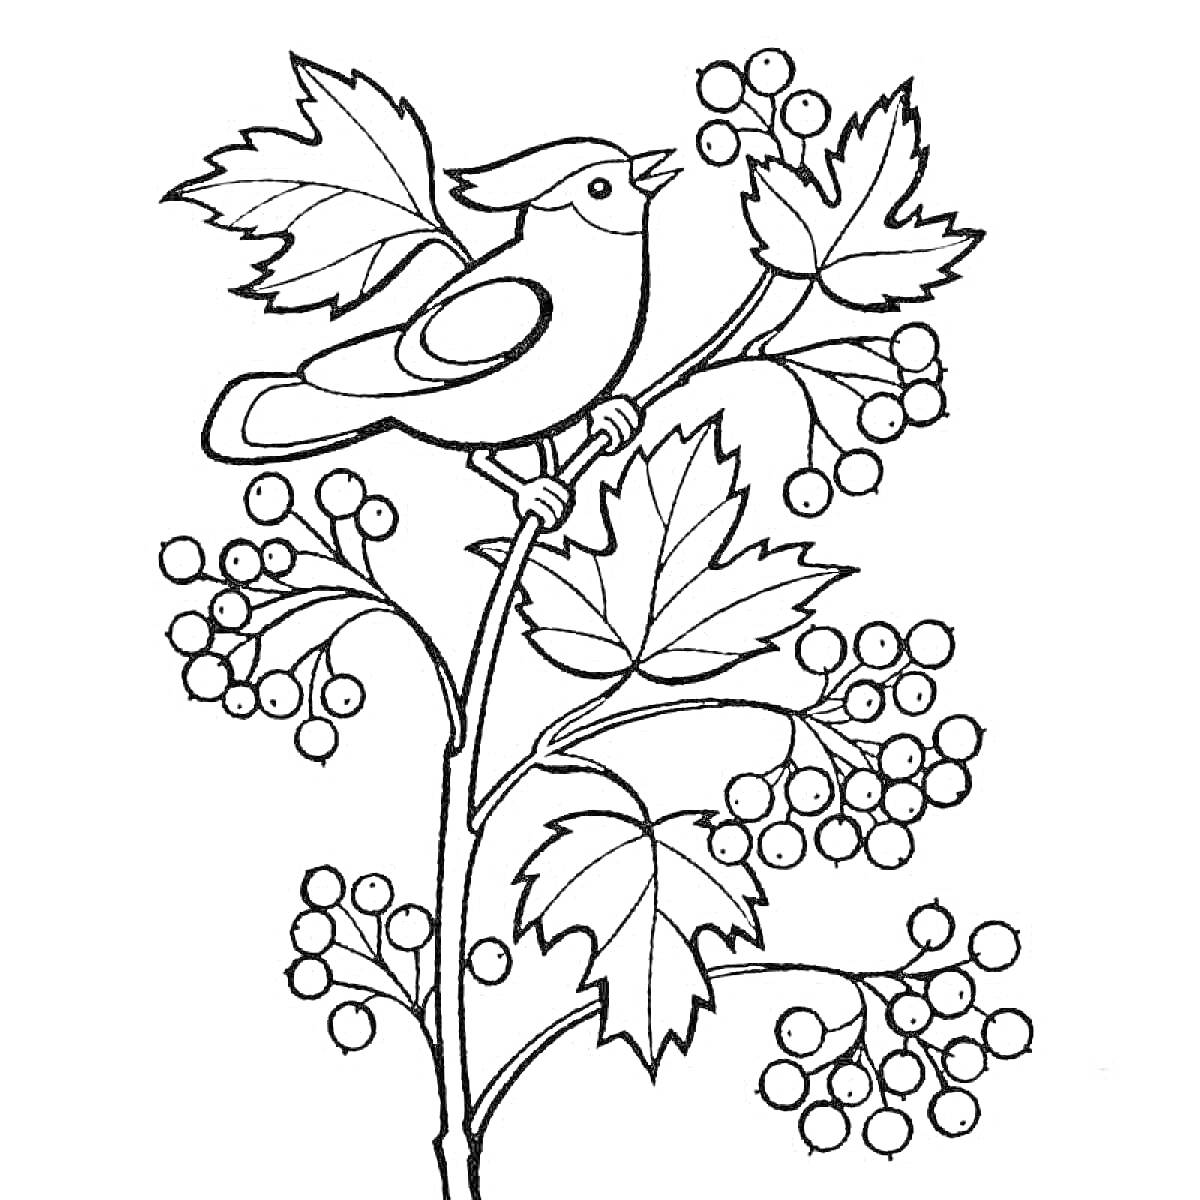 Раскраска Птица на ветке рябины с ягодами и листьями